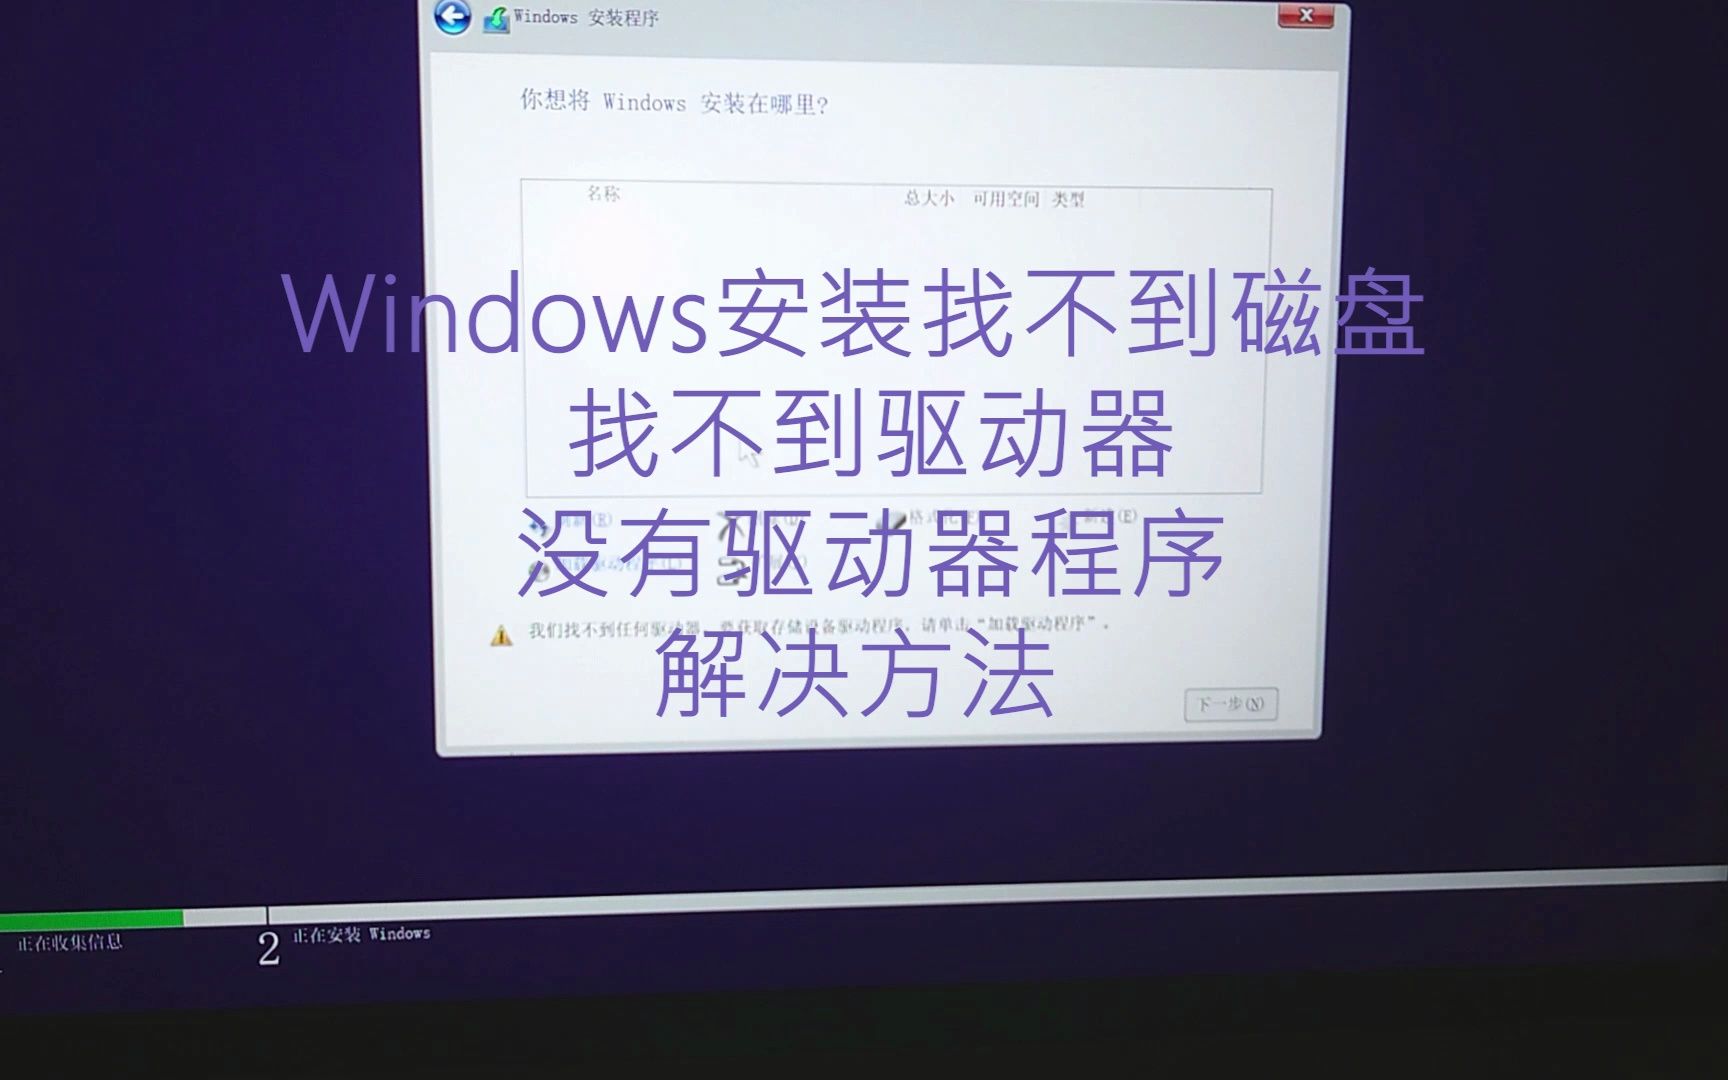 windows安装找不到磁盘没有驱动器程序的解决方法